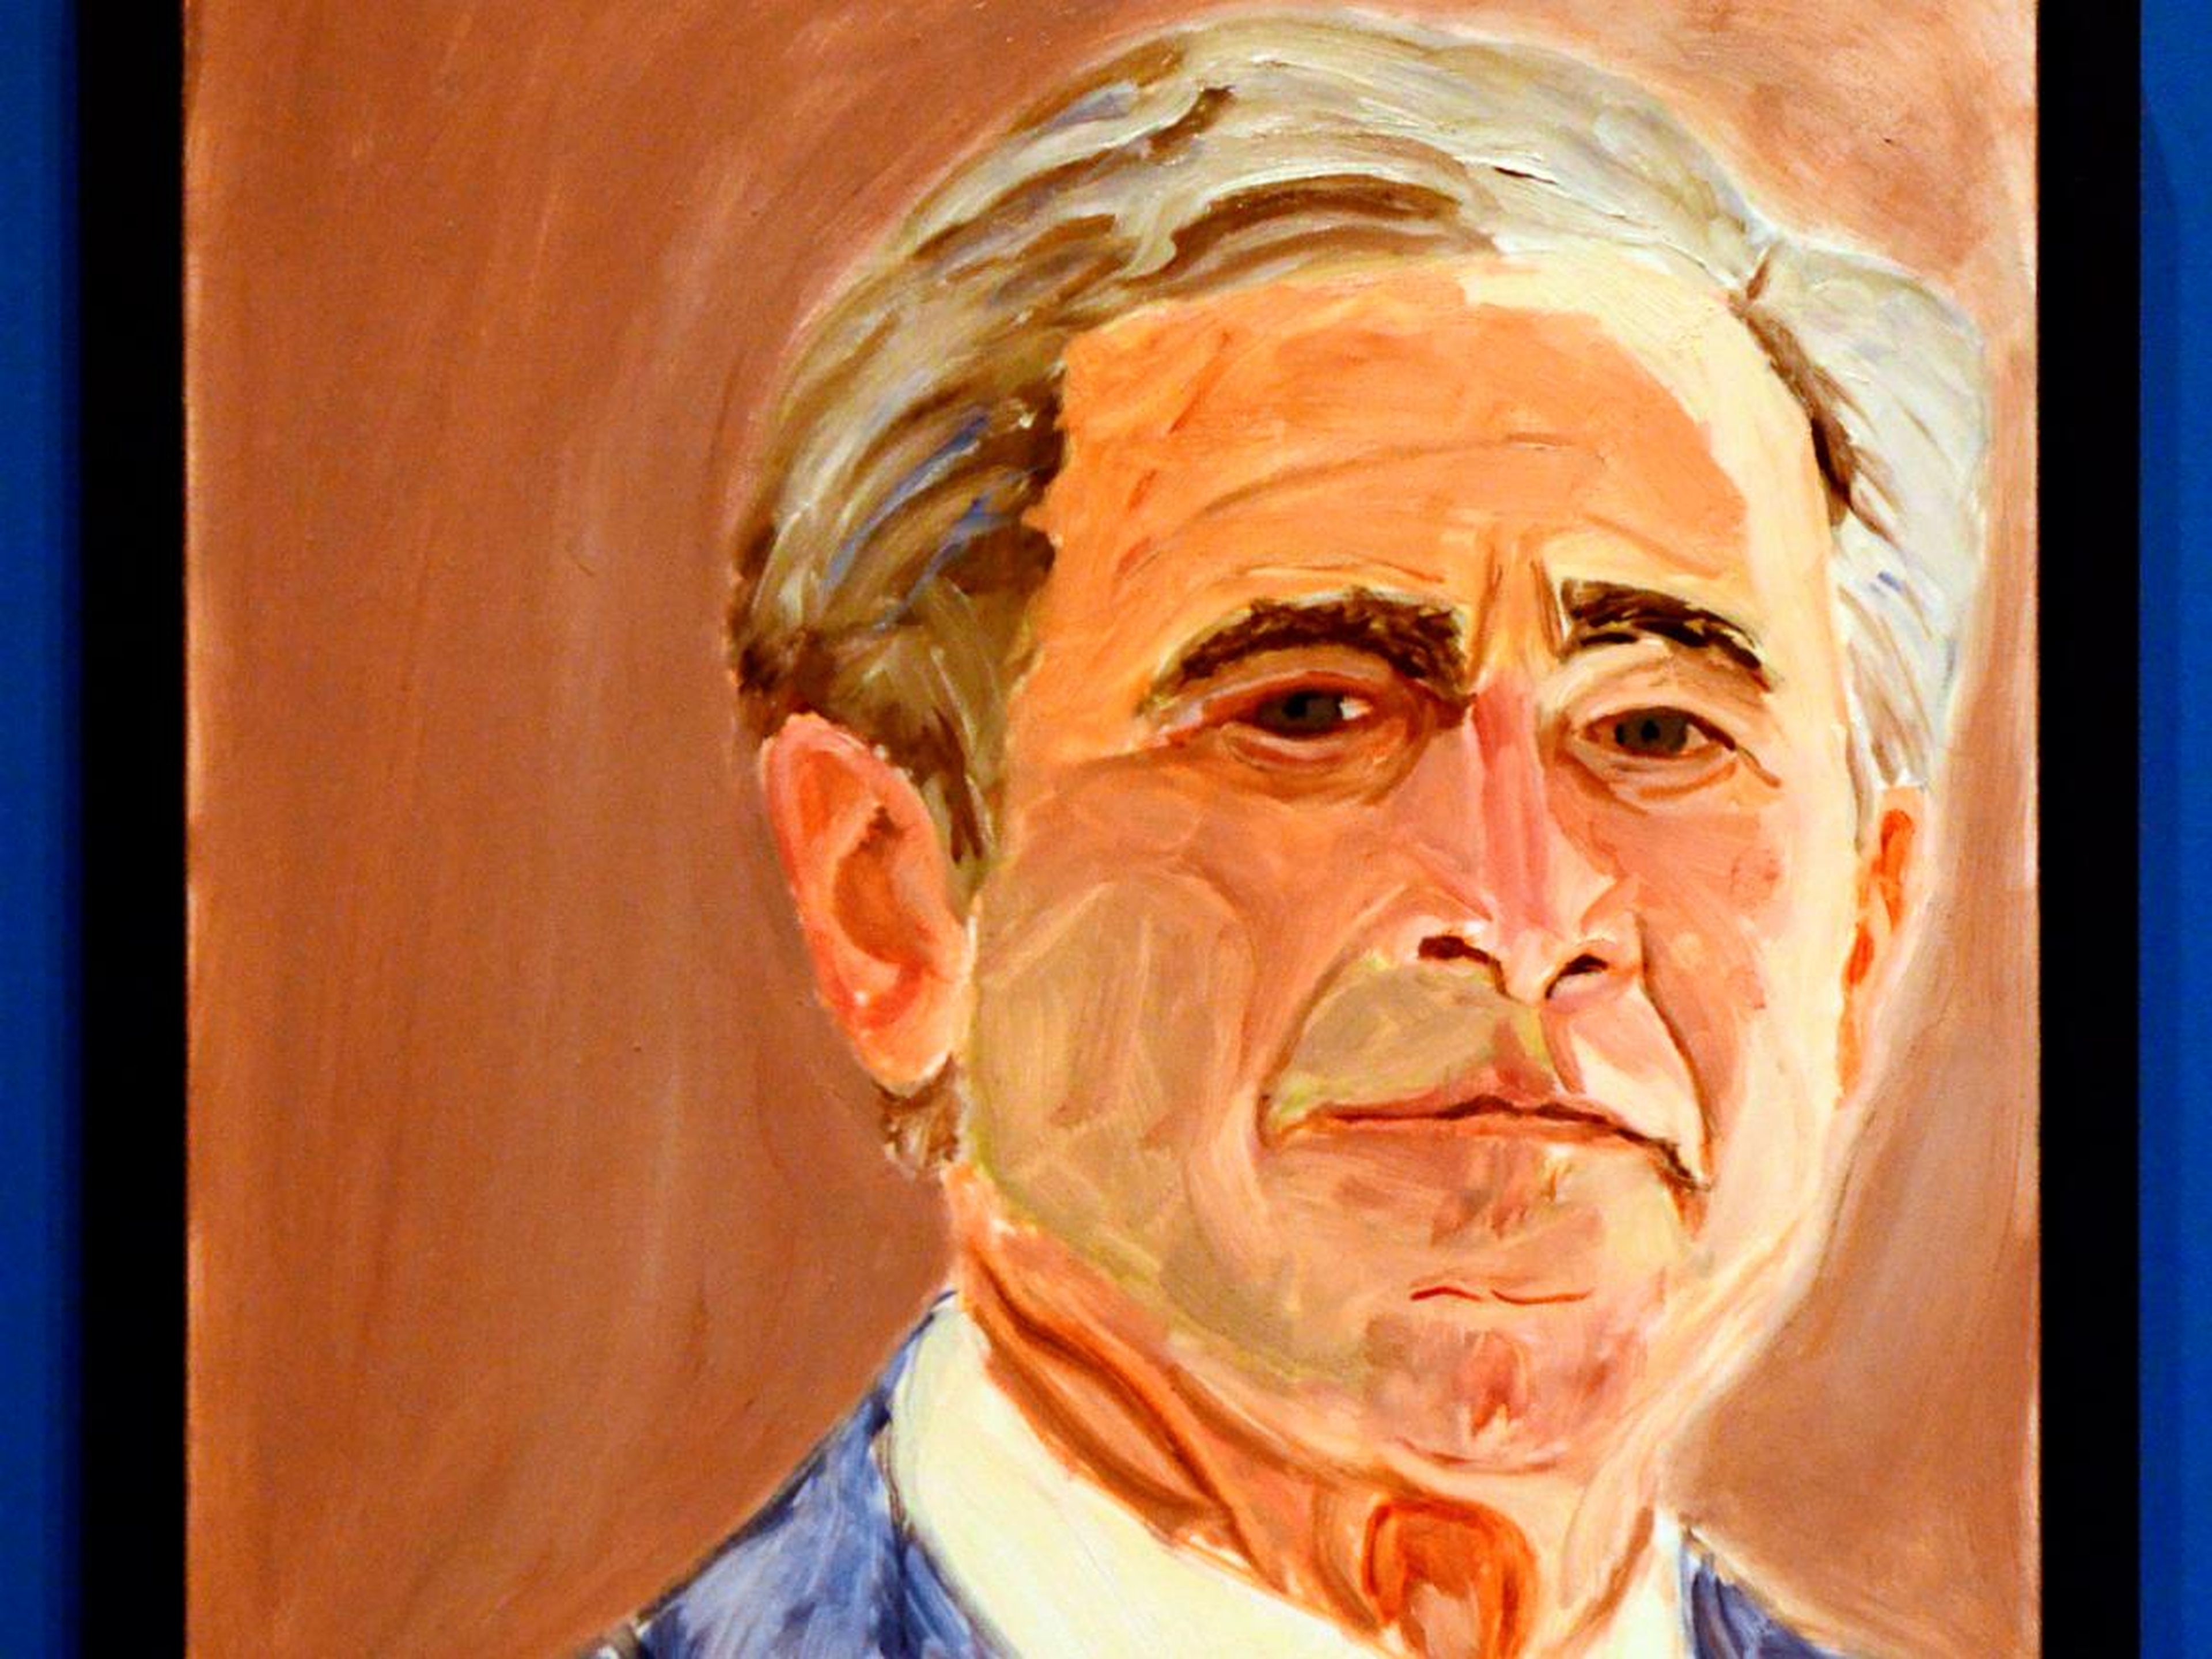 Un autorretrato del ex-presidente de EEUU George W. Bush.